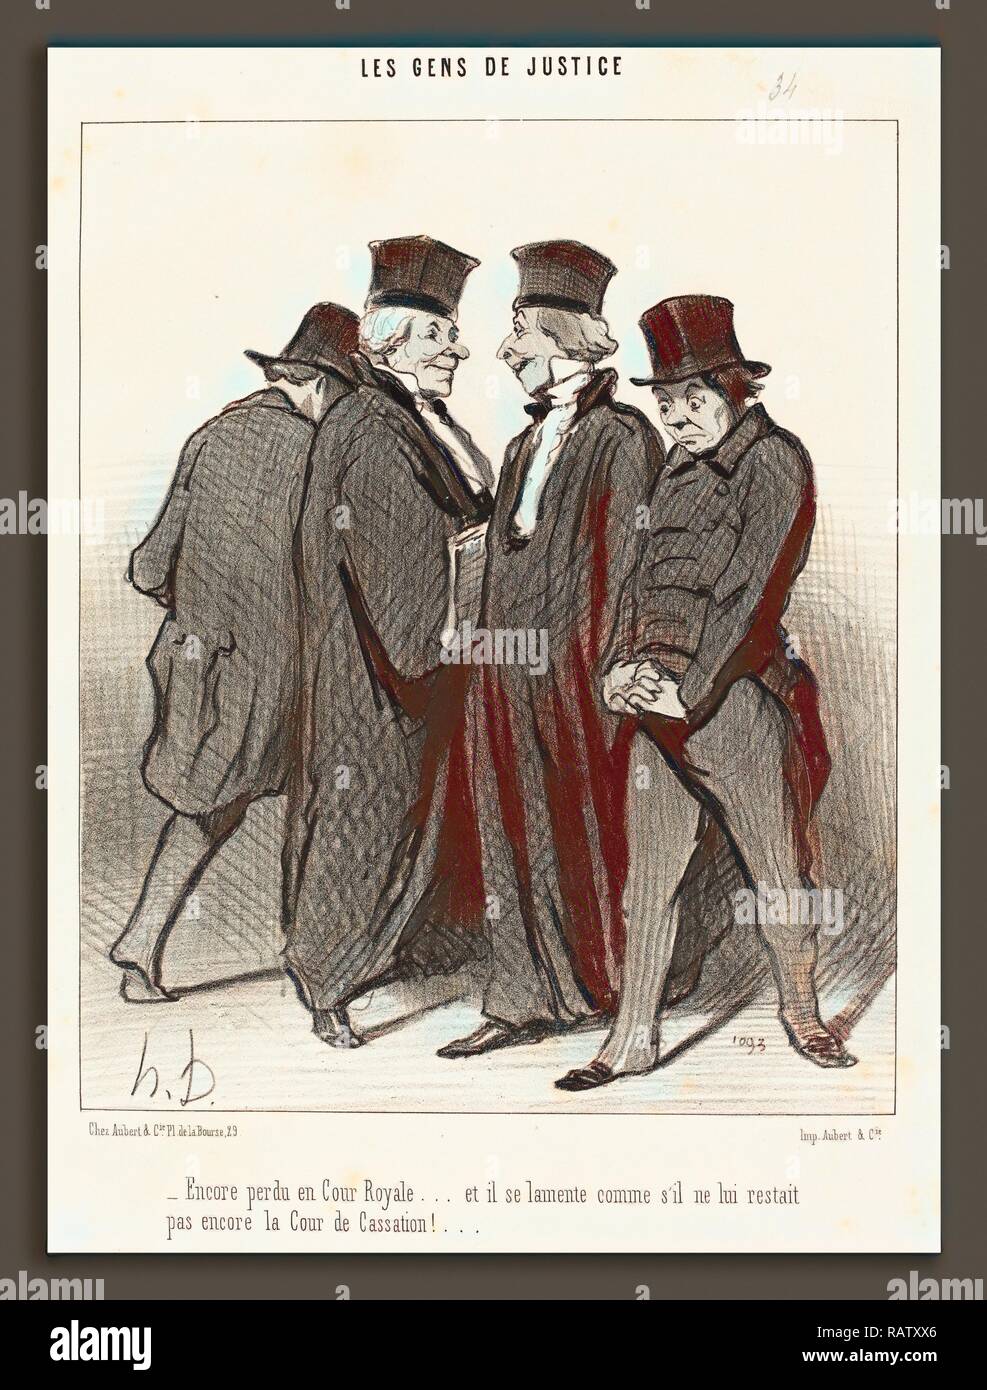 Honoré Daumier (French, 1808 - 1879), Encore perdu en Cour Royale et il se lamente, 1848, lithograph. Reimagined Stock Photo